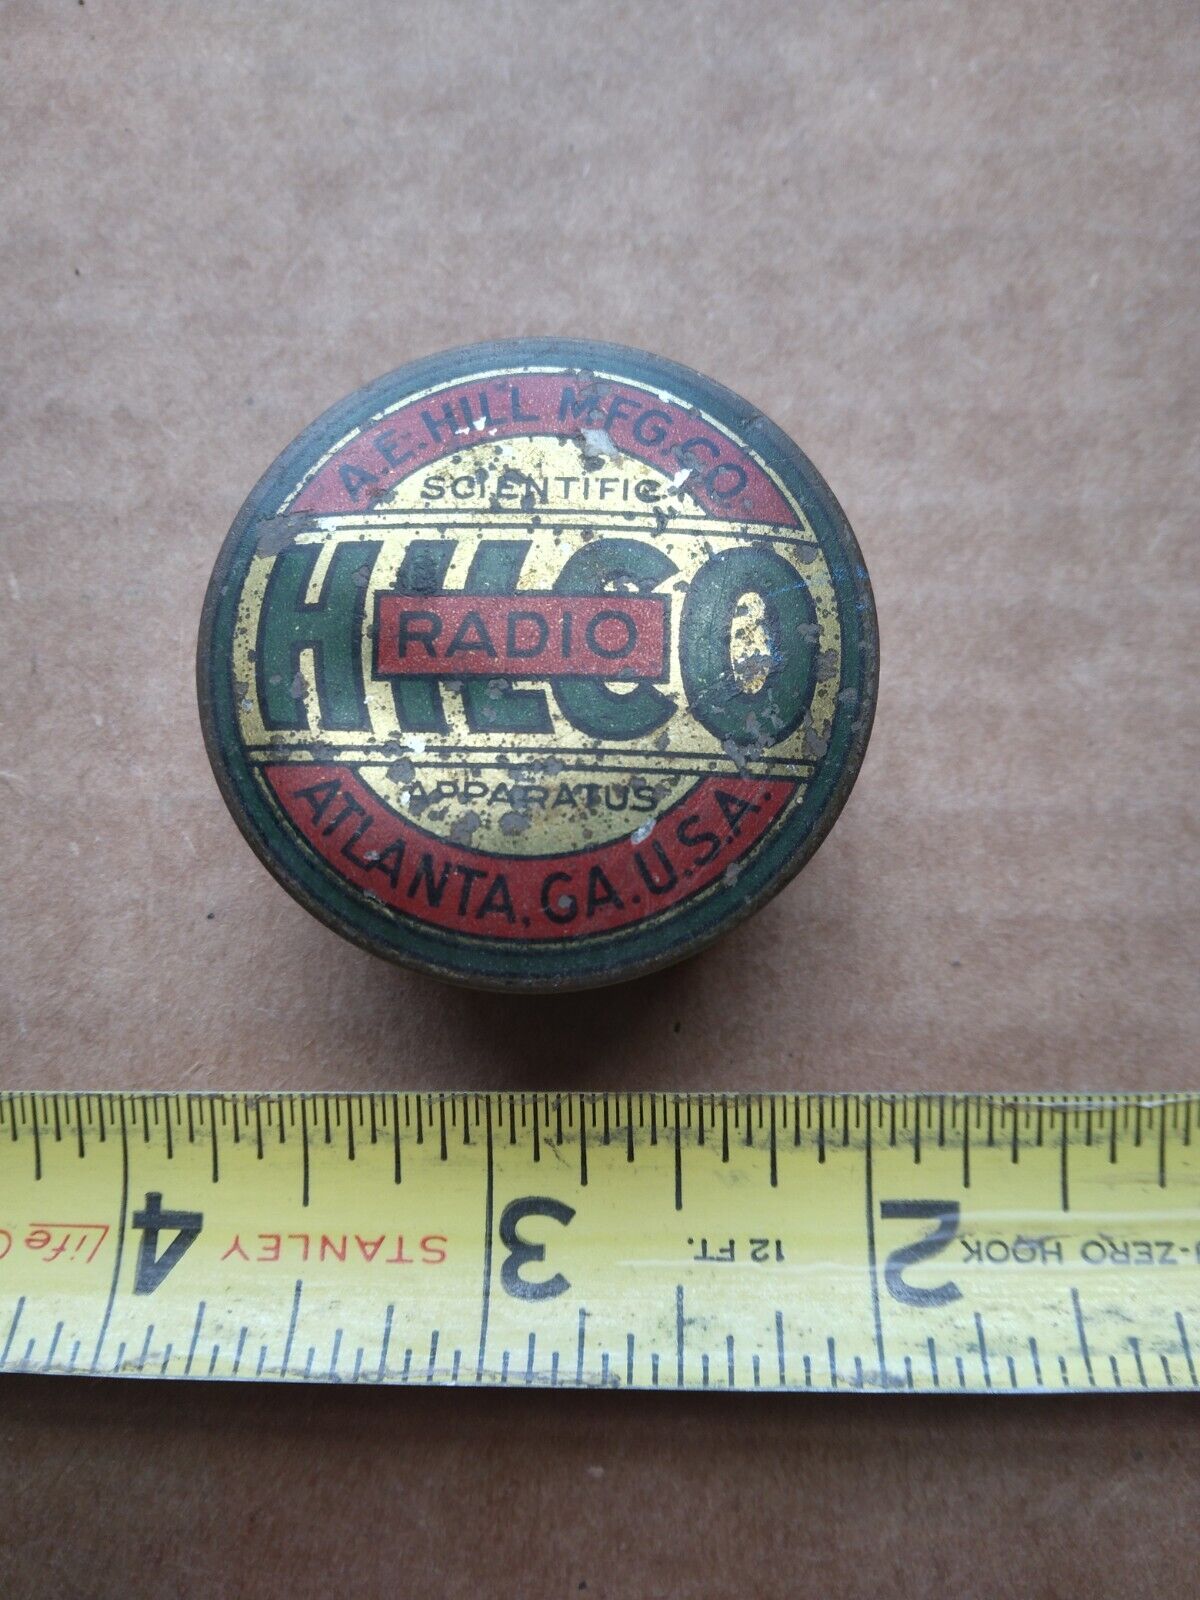 Antique A.E. Hill Co. Scientific apparatus Hilco Radio Small Tin Atlanta GA